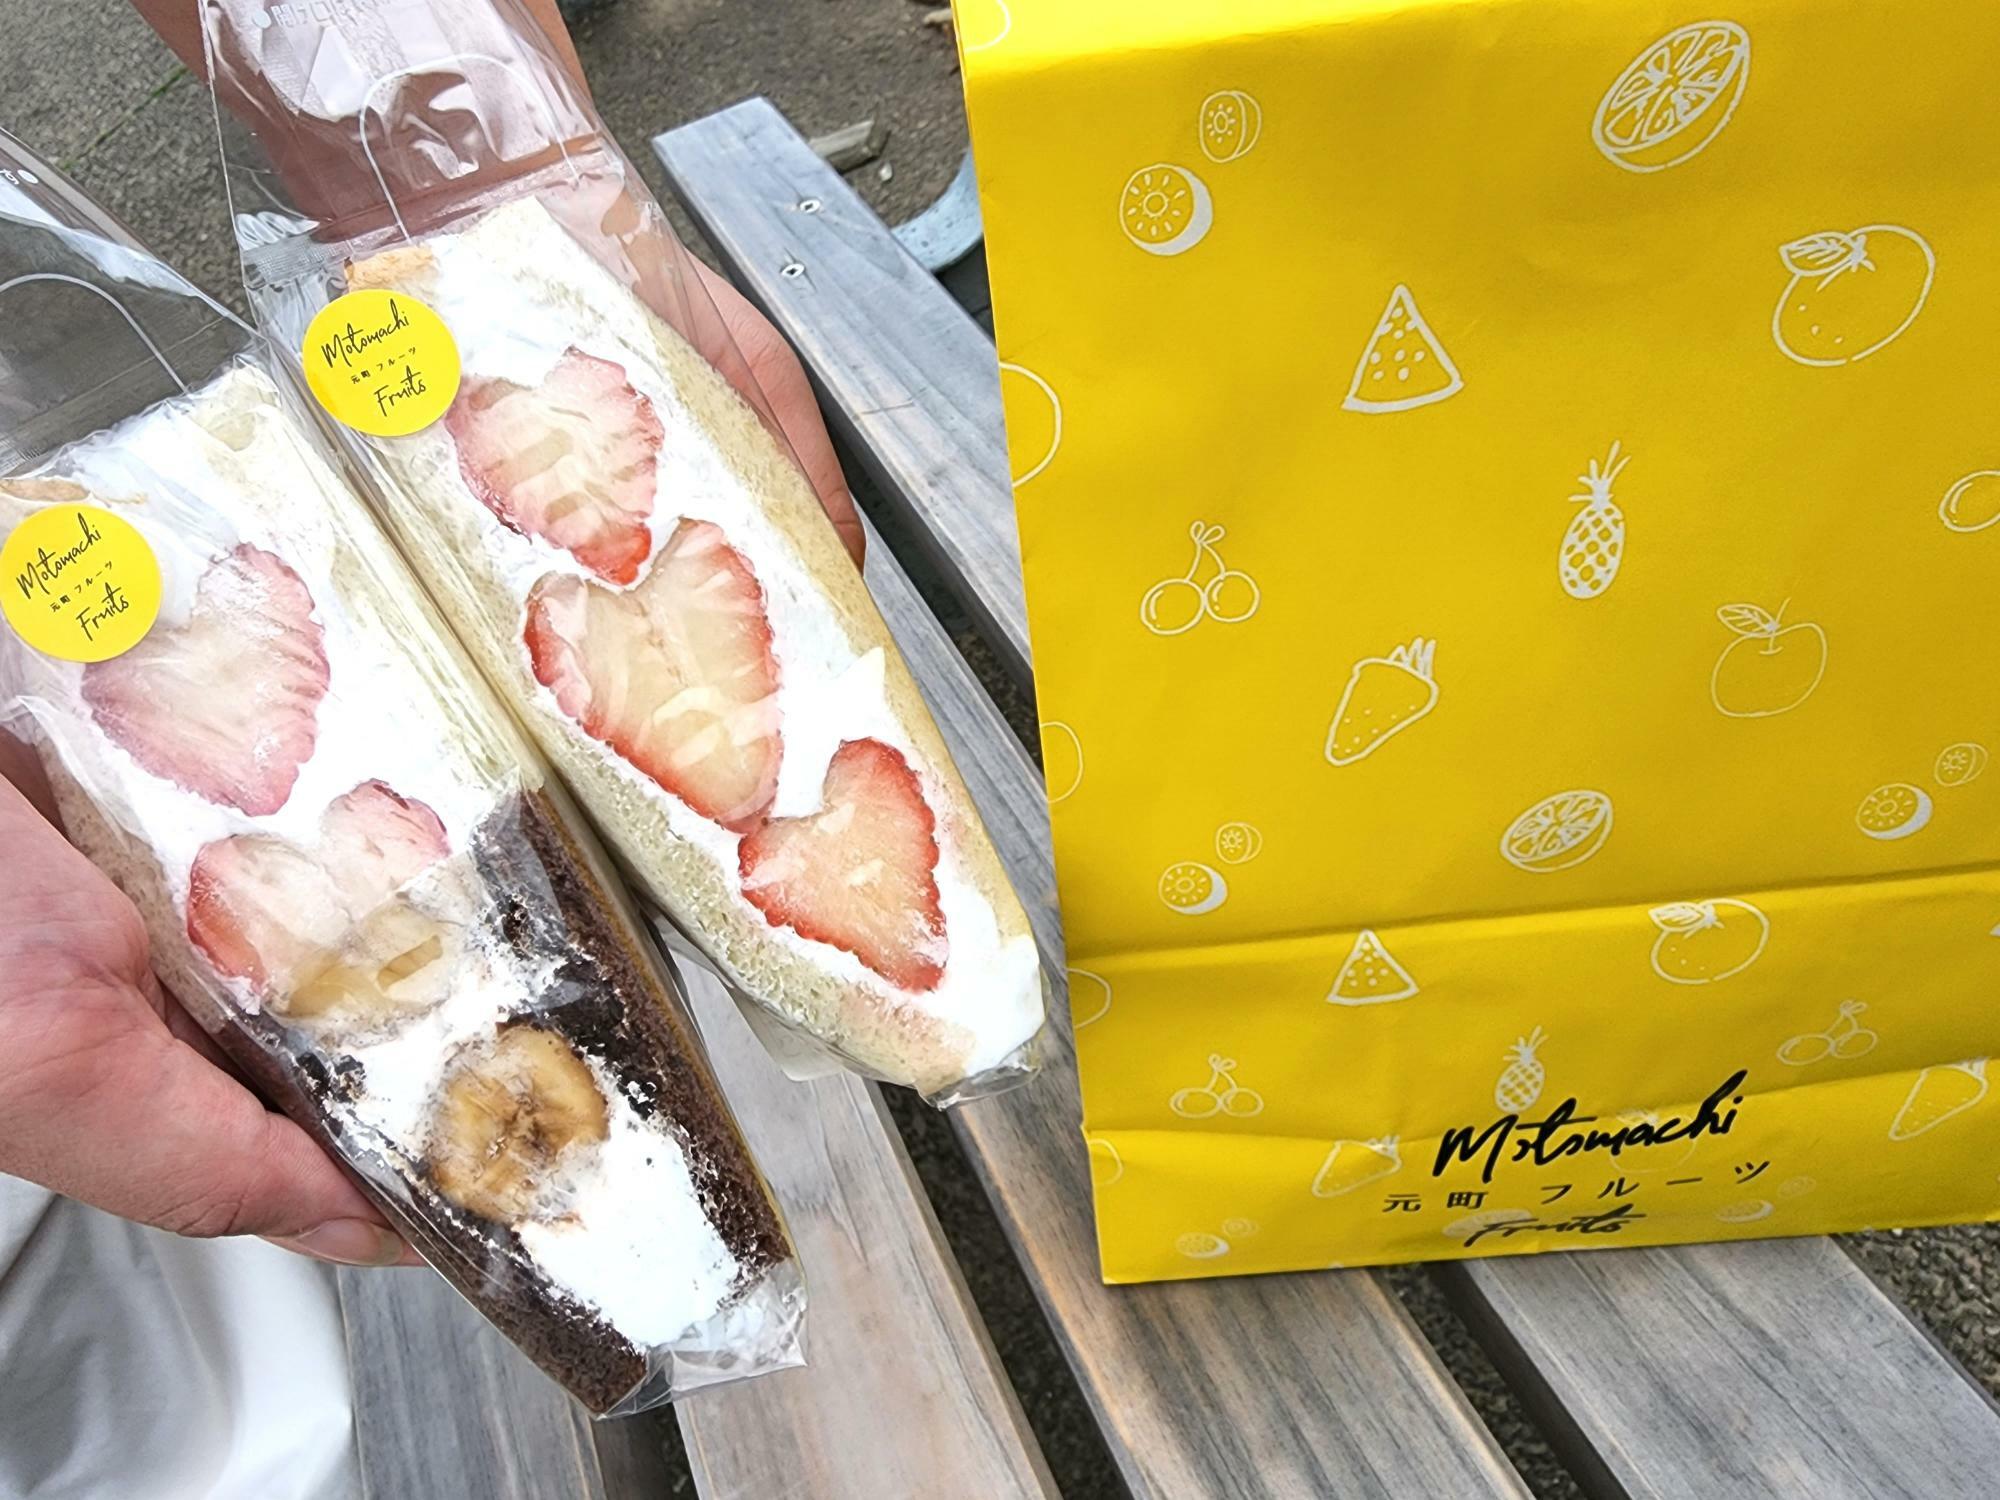 「徳島駅クレメントプラザ」POP-UP SHOPとして出店中「元町フルーツ」のフルーツサンド。